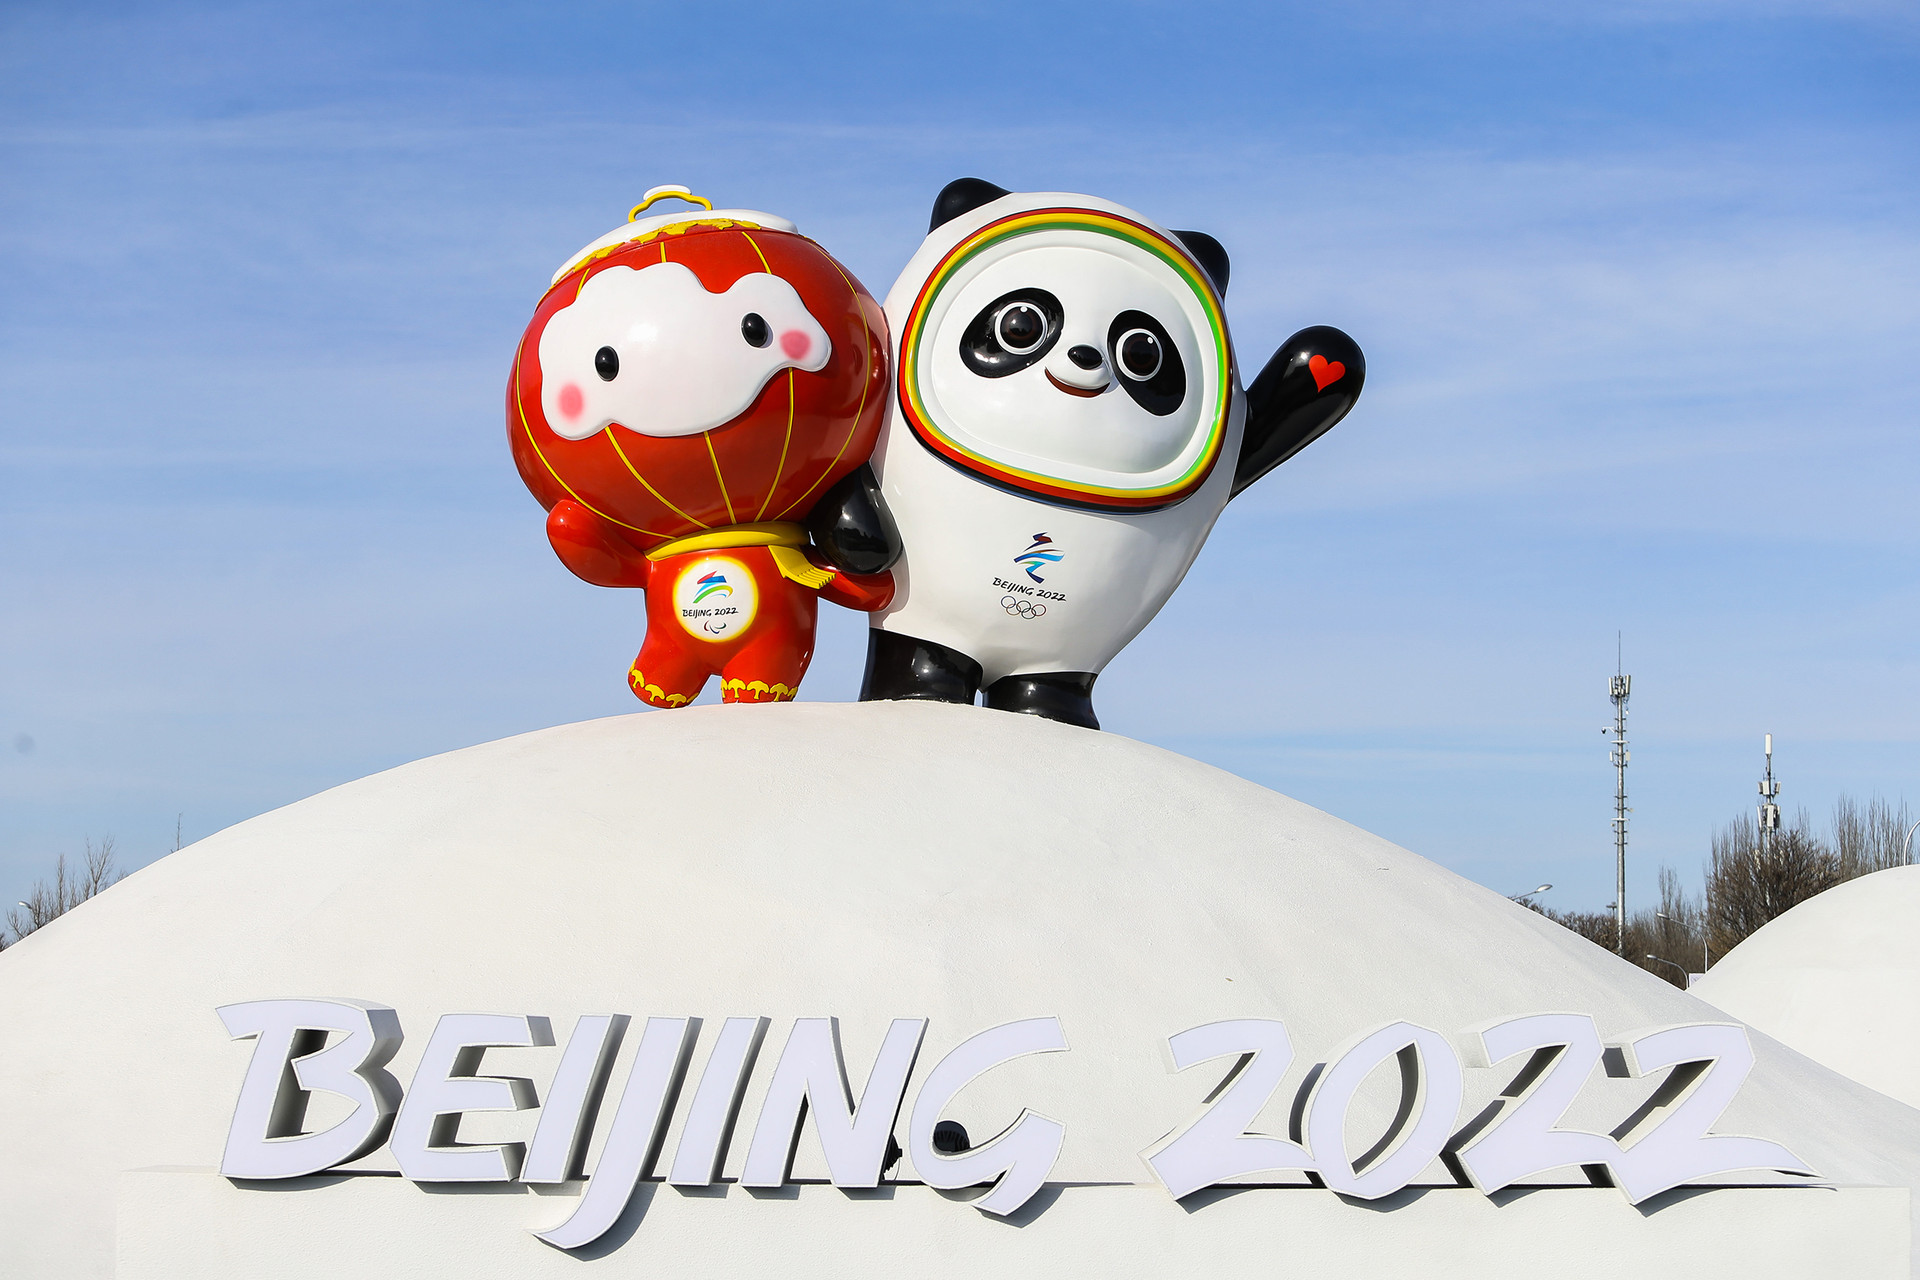 Linh vật gấu trúc Thế vận hội Olympic Bing Dwen Dwen cùng Shuey Rhon Rhon, linh vật của Thế vận hội Paralympic. Ảnh: Today Show.